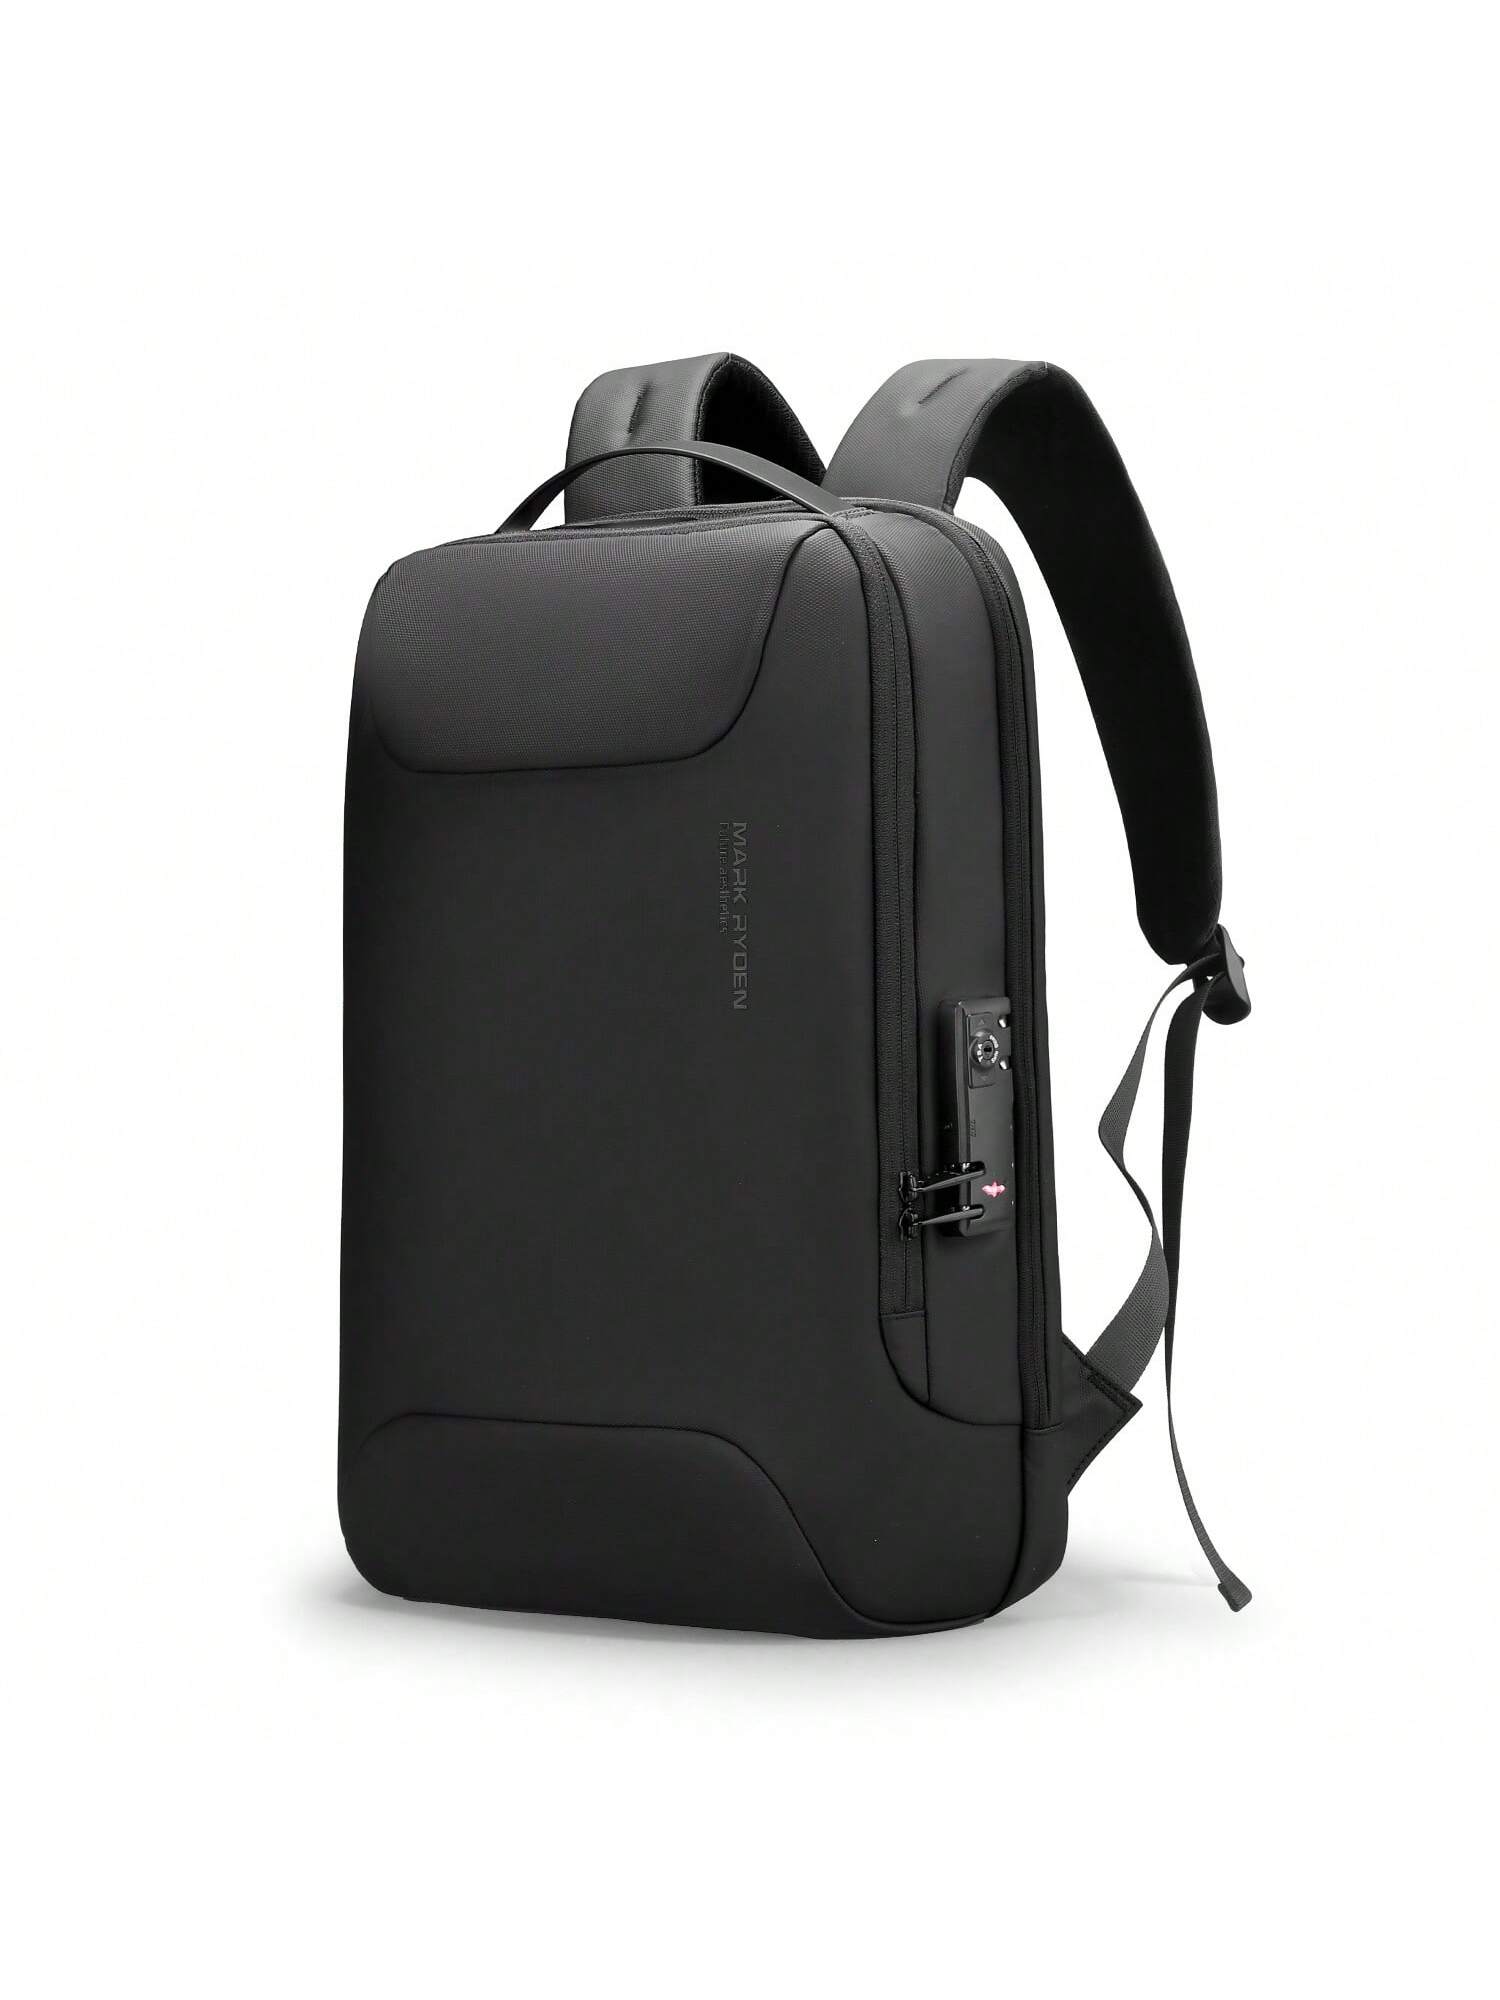 Мужской рюкзак Mark Ryden Anti Thief, черный mark ryden водонепроницаемый дорожный рюкзак rfid противоугонный 17 дюймовый школьный рюкзак для ноутбука mr5748 черный 17 дюймов